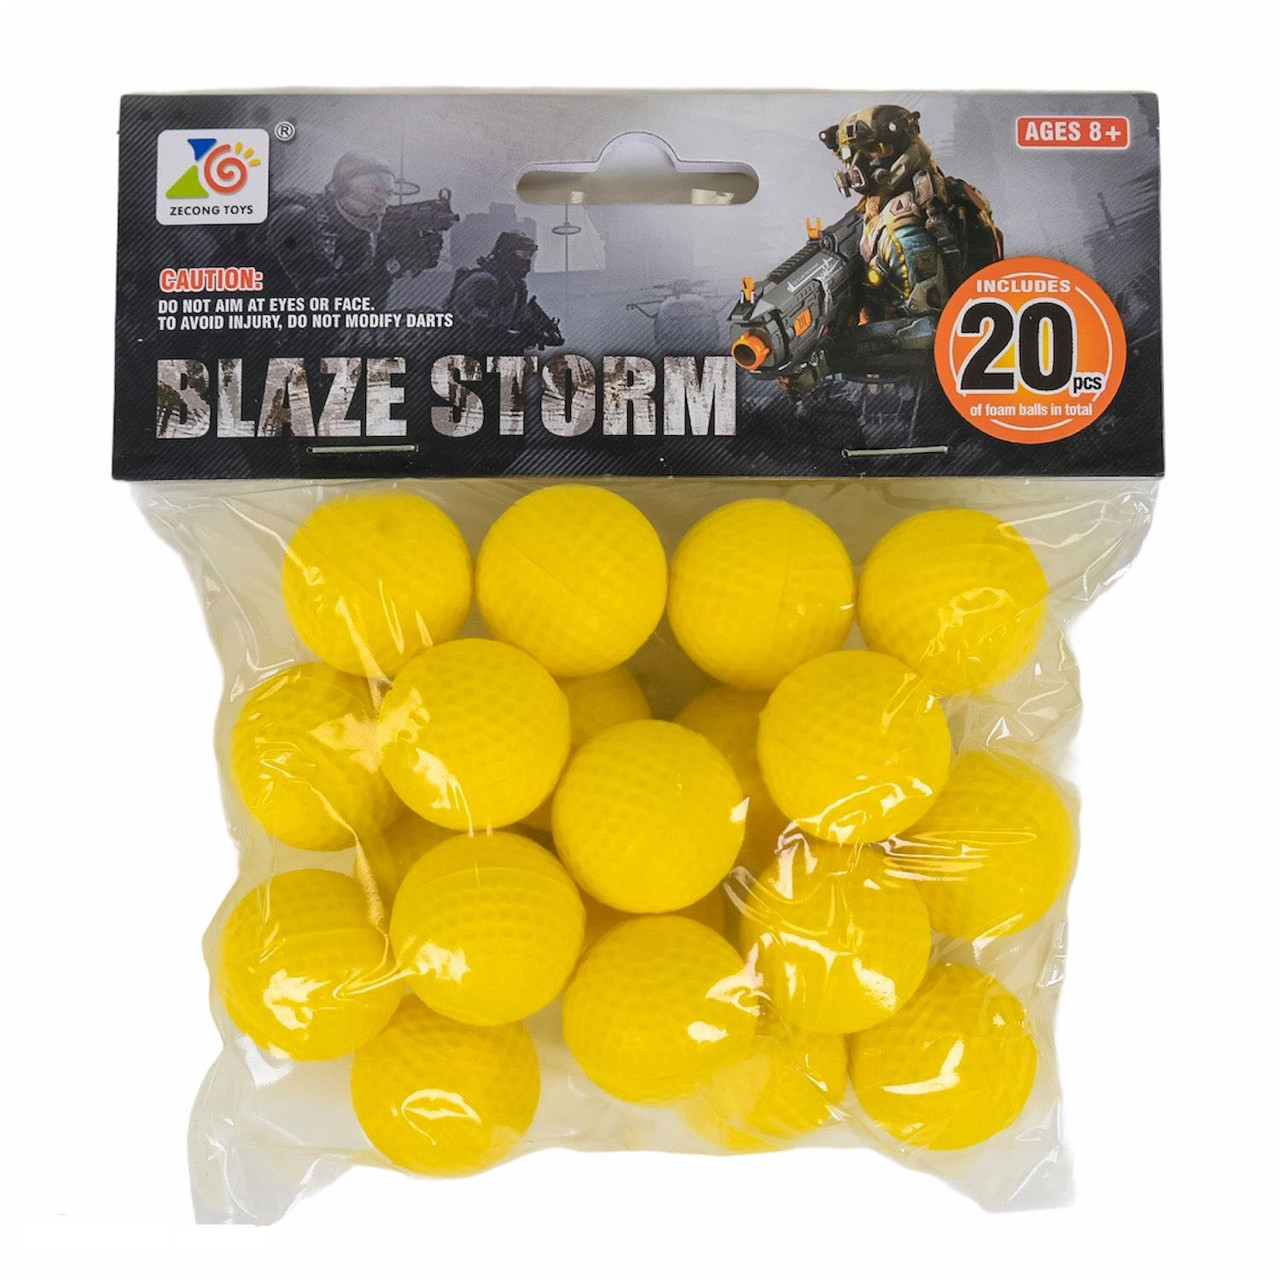 

Шарики мягкие для оружия Blaze storm патроны Nerf боеприпасы 20 шт, Желтый